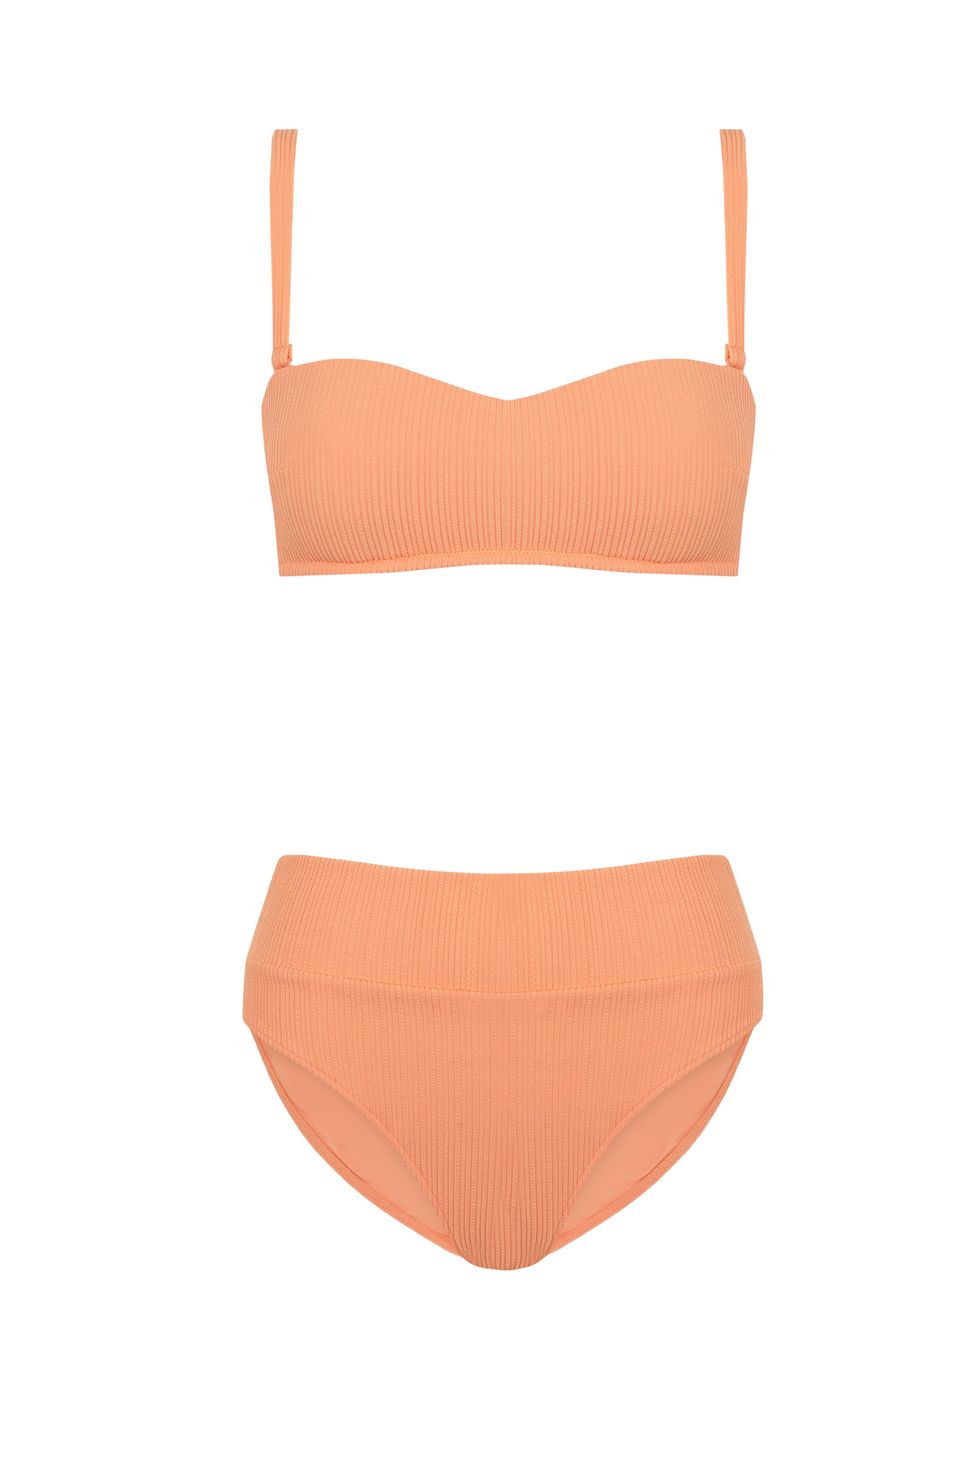 bikini color mandarina de la nueva colección de baño de women'secret